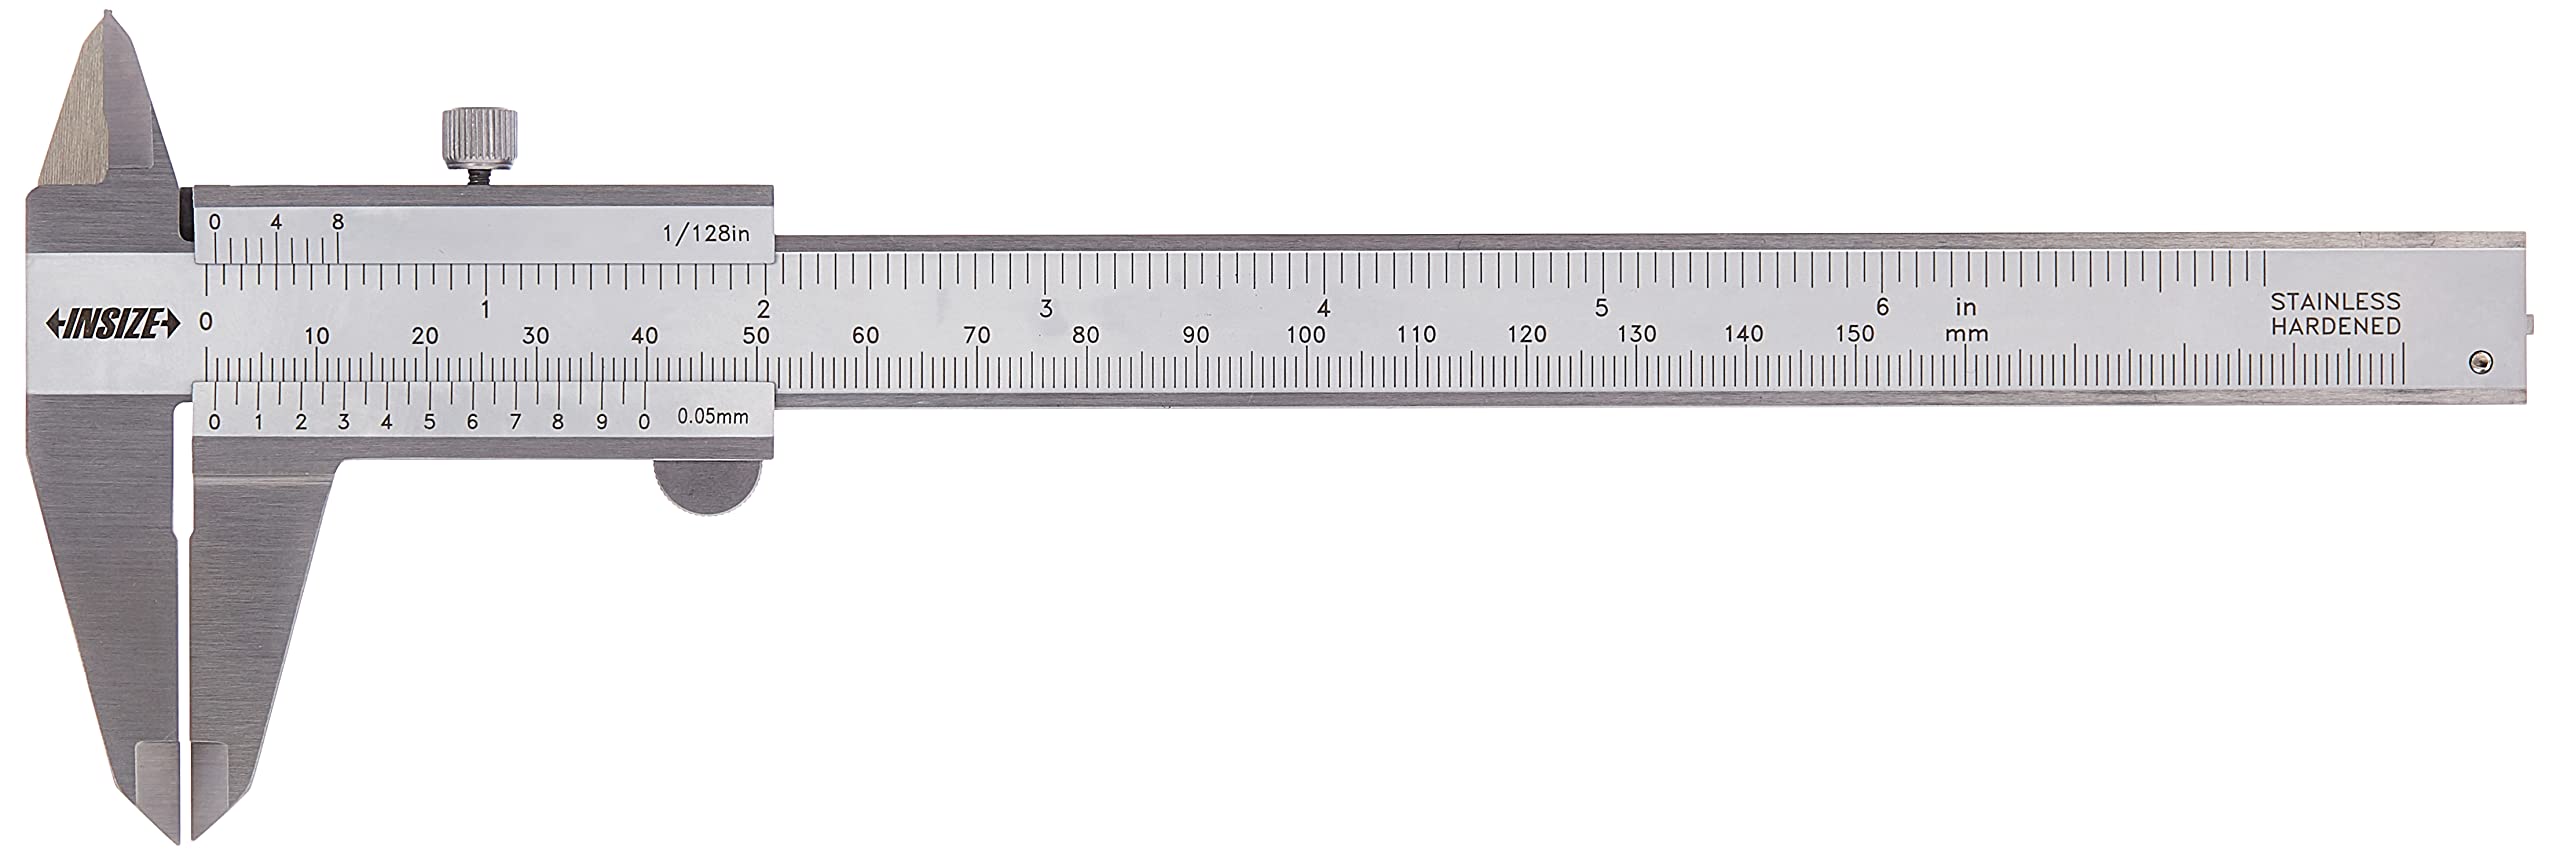 INSIZE 1205-150S Messschieber, 0–150 mm, Teilung 0,05 mm